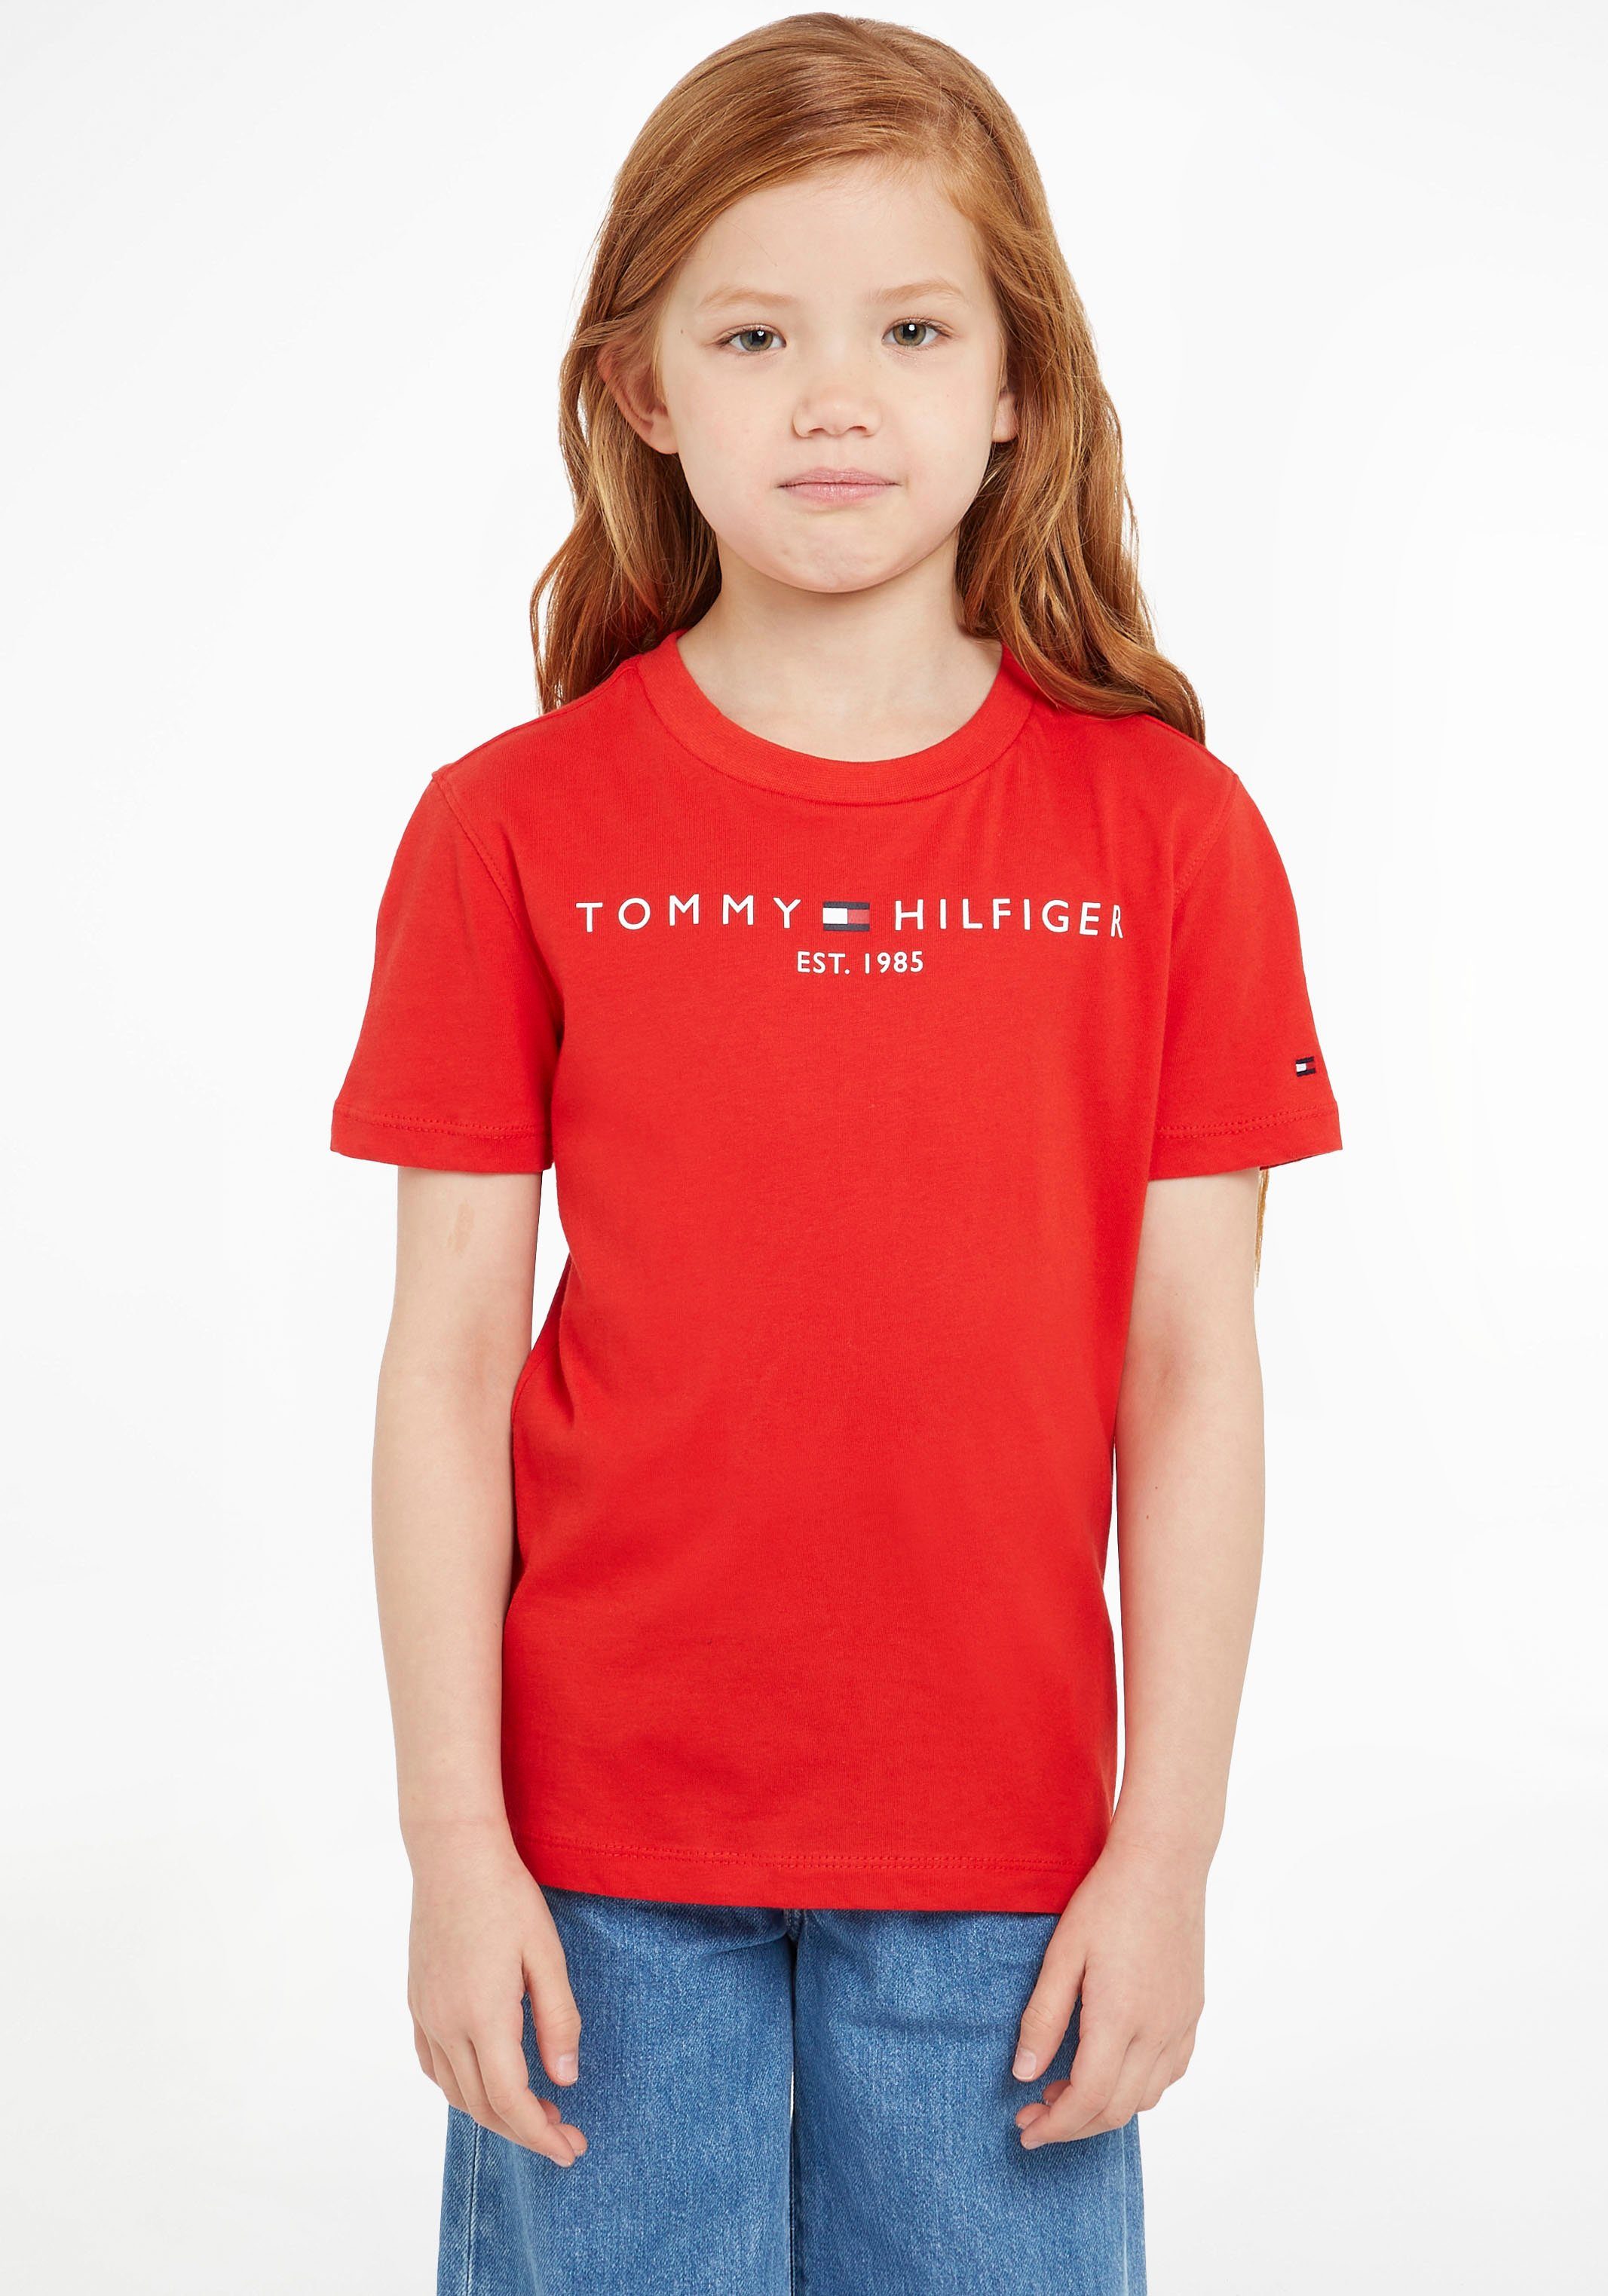 TEE Tommy ESSENTIAL Mädchen Kids und Kinder Hilfiger Jungen MiniMe,für Junior T-Shirt